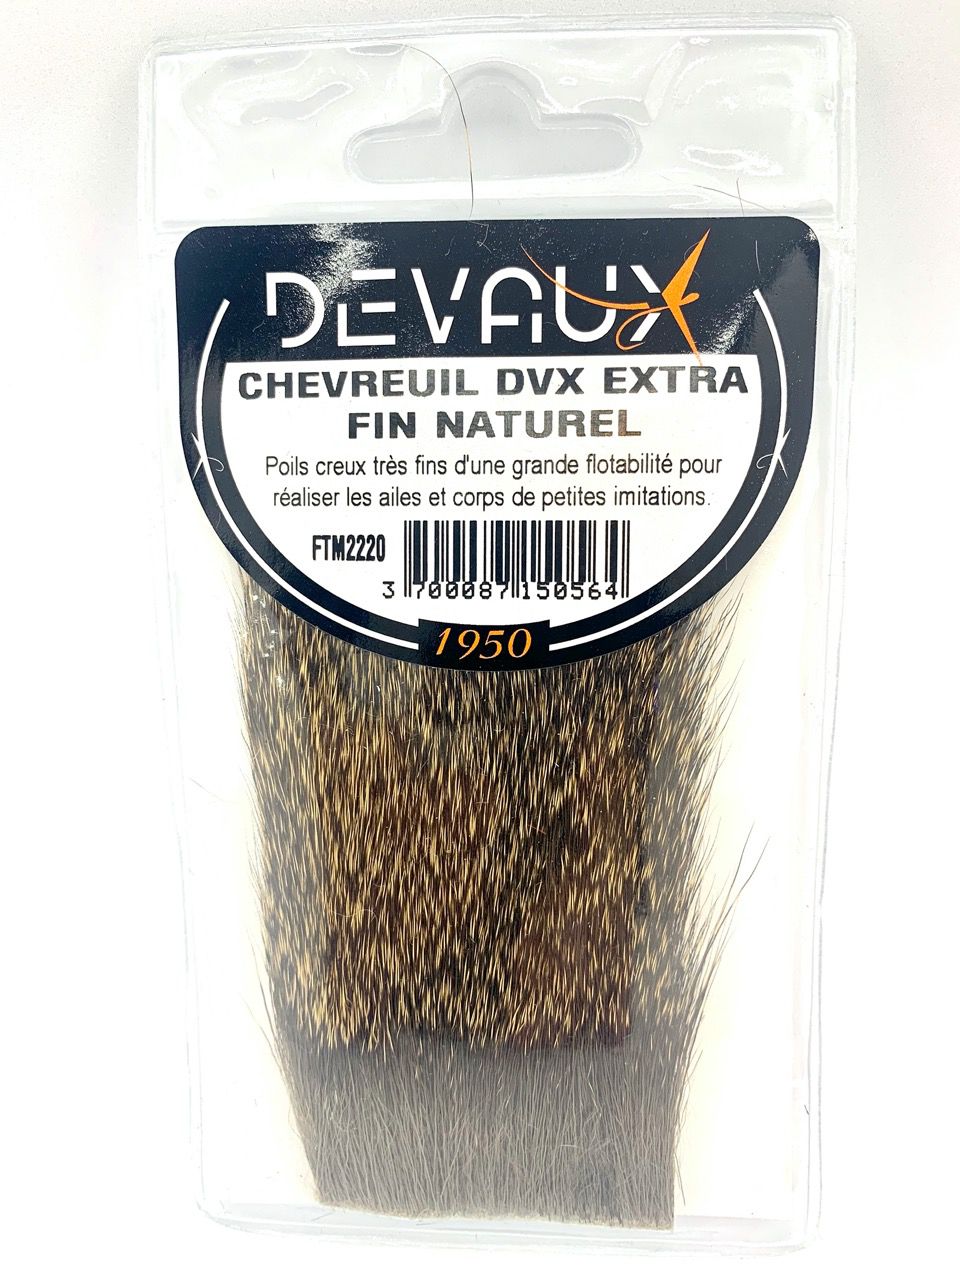 Chevreuil naturel DVX ou extra fin naturel DVX